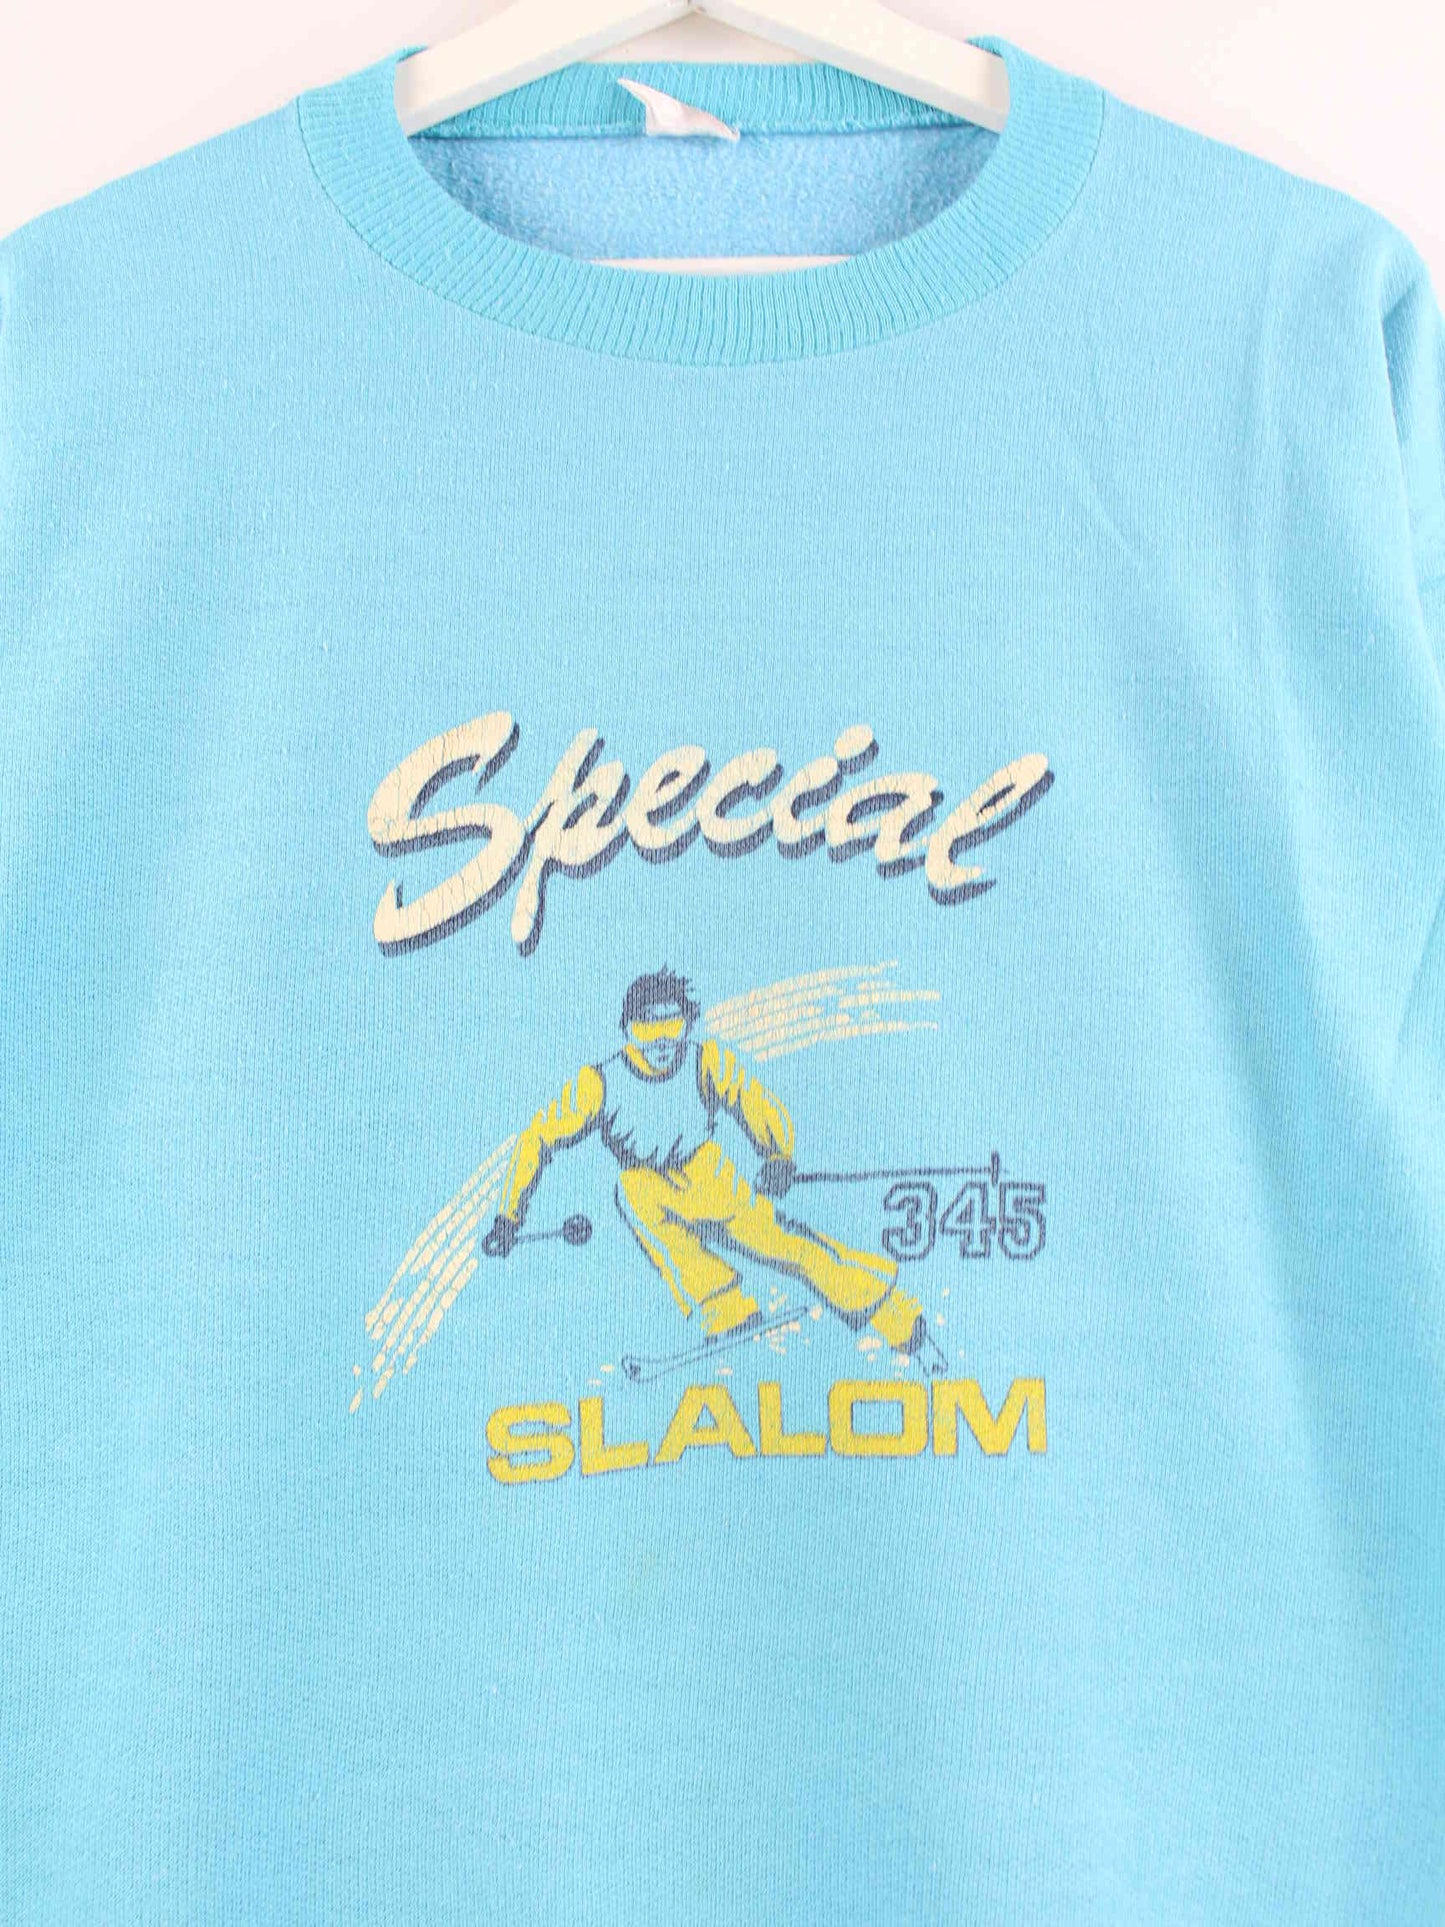 Vintage 80s Print Sweater Blau M